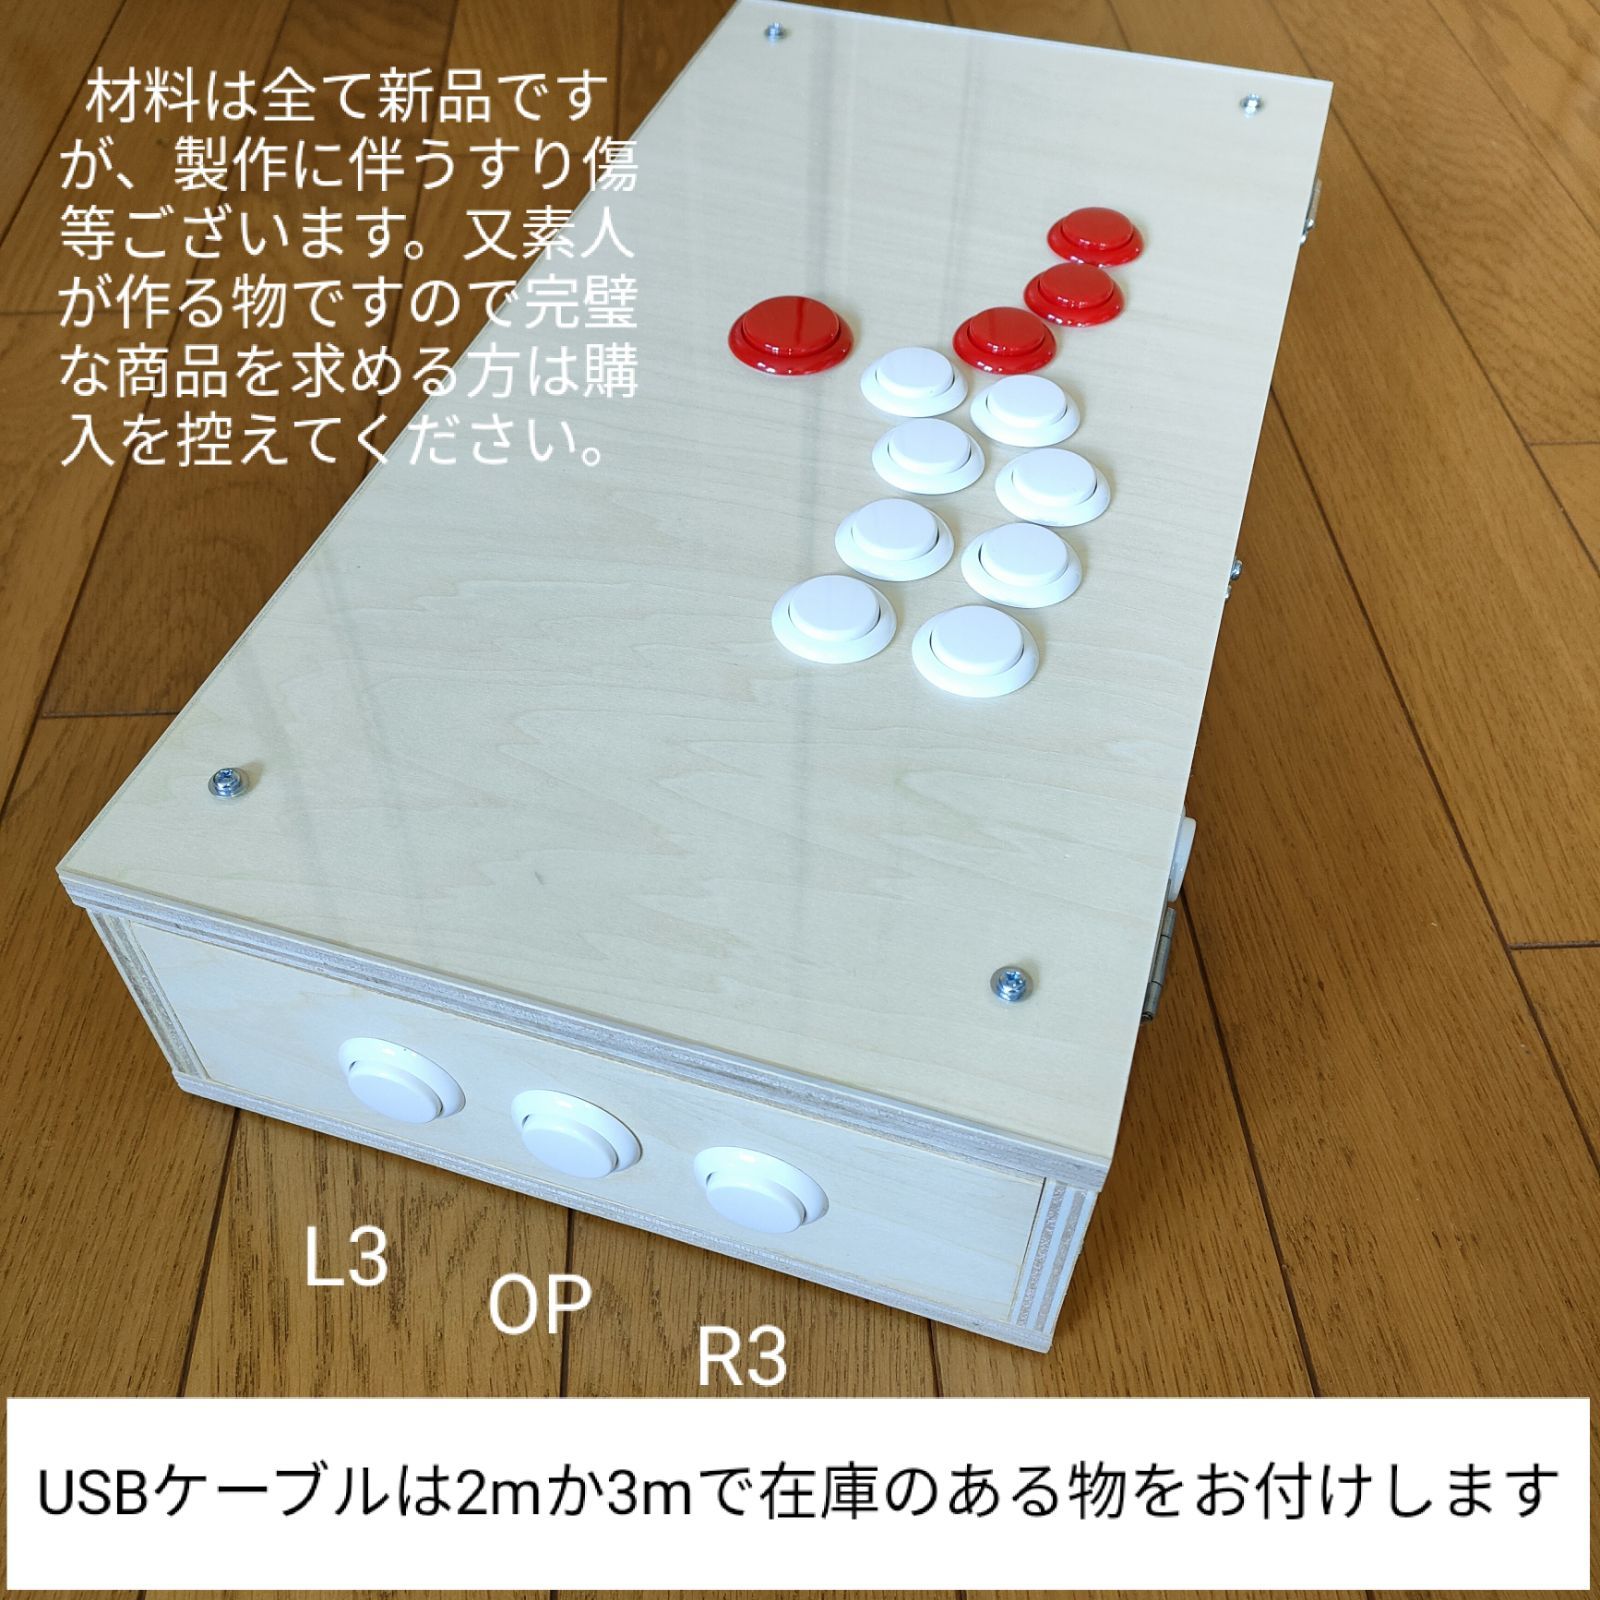 hitbox アケコン ヒットボックス レバーレス PS4 PC SWITCH - メルカリ